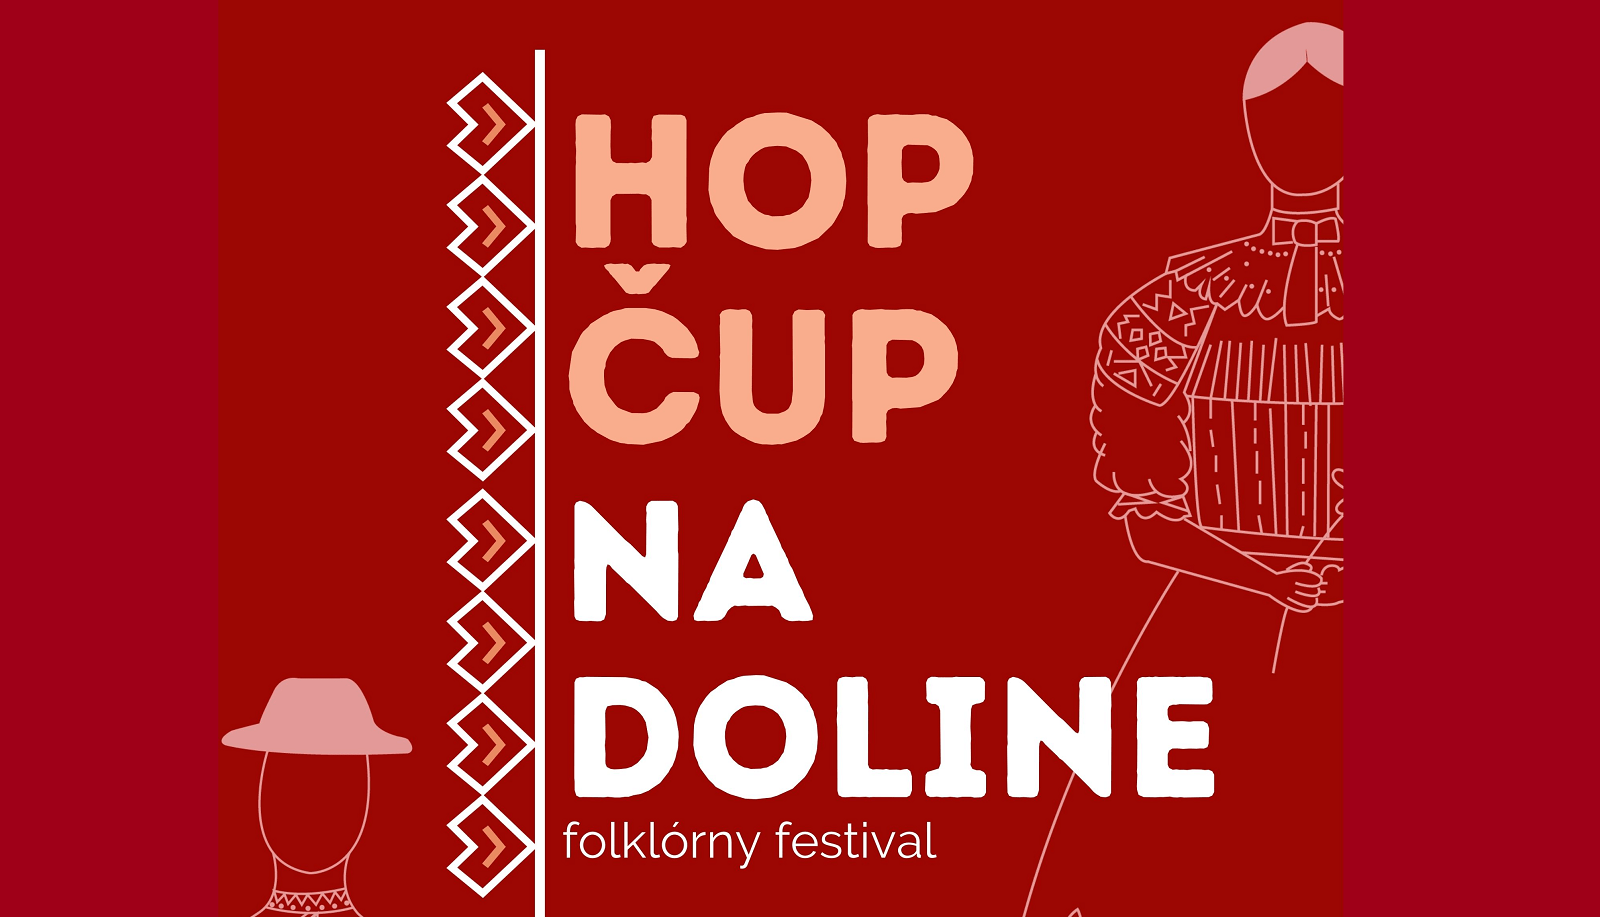 Pozvánka na folklórny festival HOP ČUP na doline